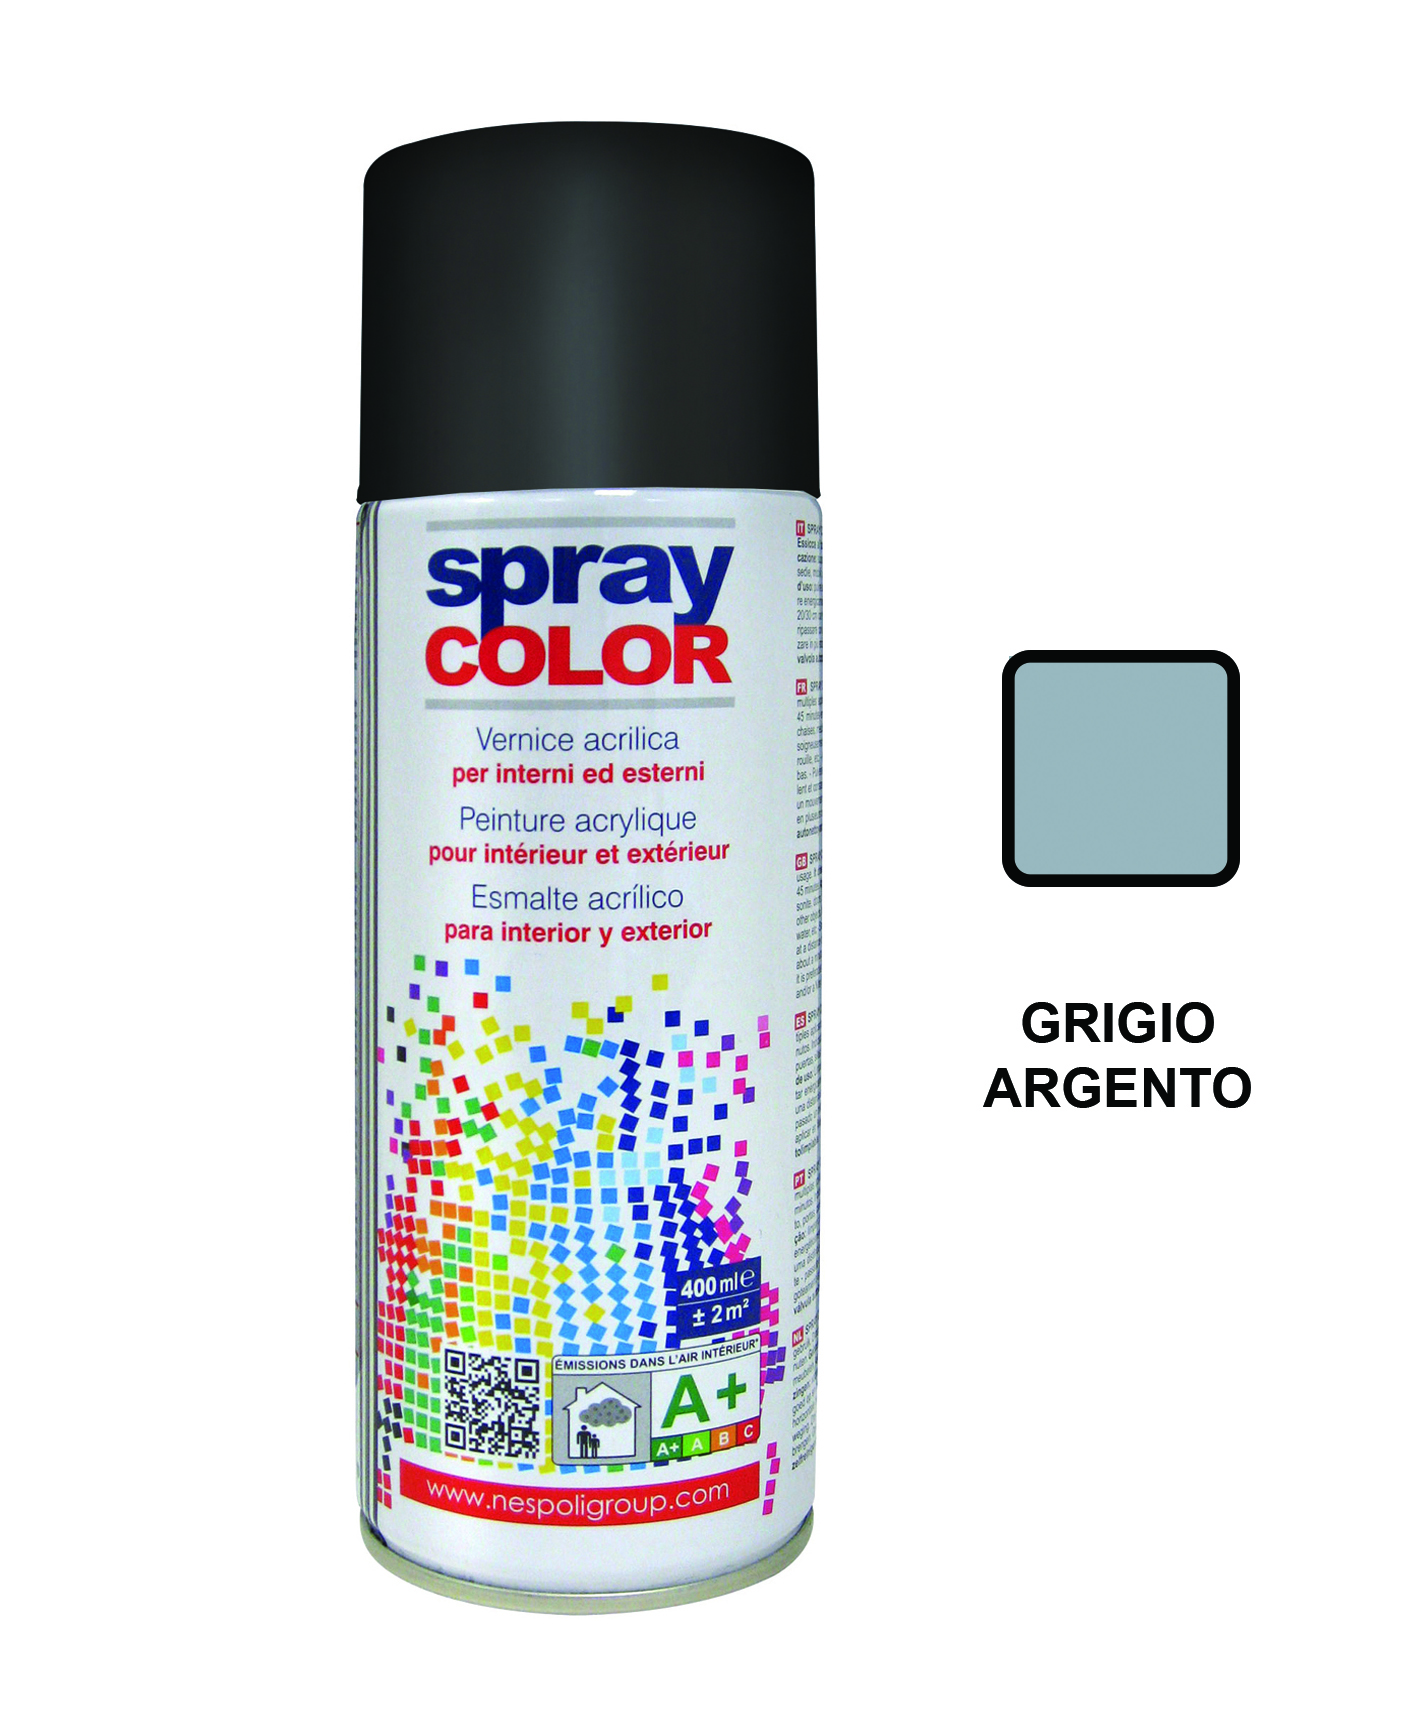 Spraycolor grigio argento 7001 400ml